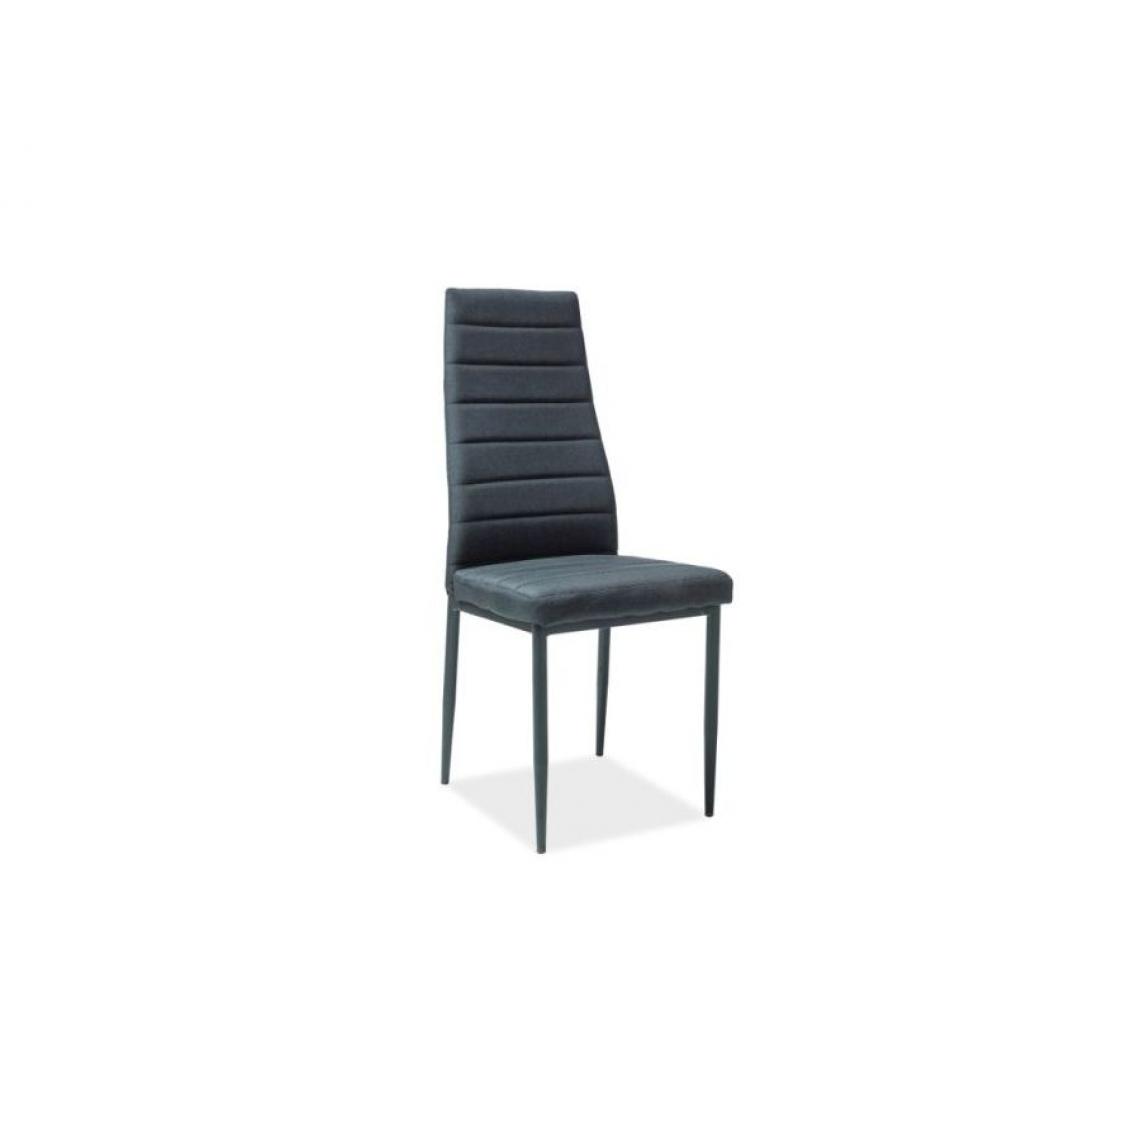 Hucoco - ACKIE | Chaise style loft avec base en métal salle à manger/bureau | Dimensions 96x40x38 cm | Rembourrage en tissu - Noir - Chaises